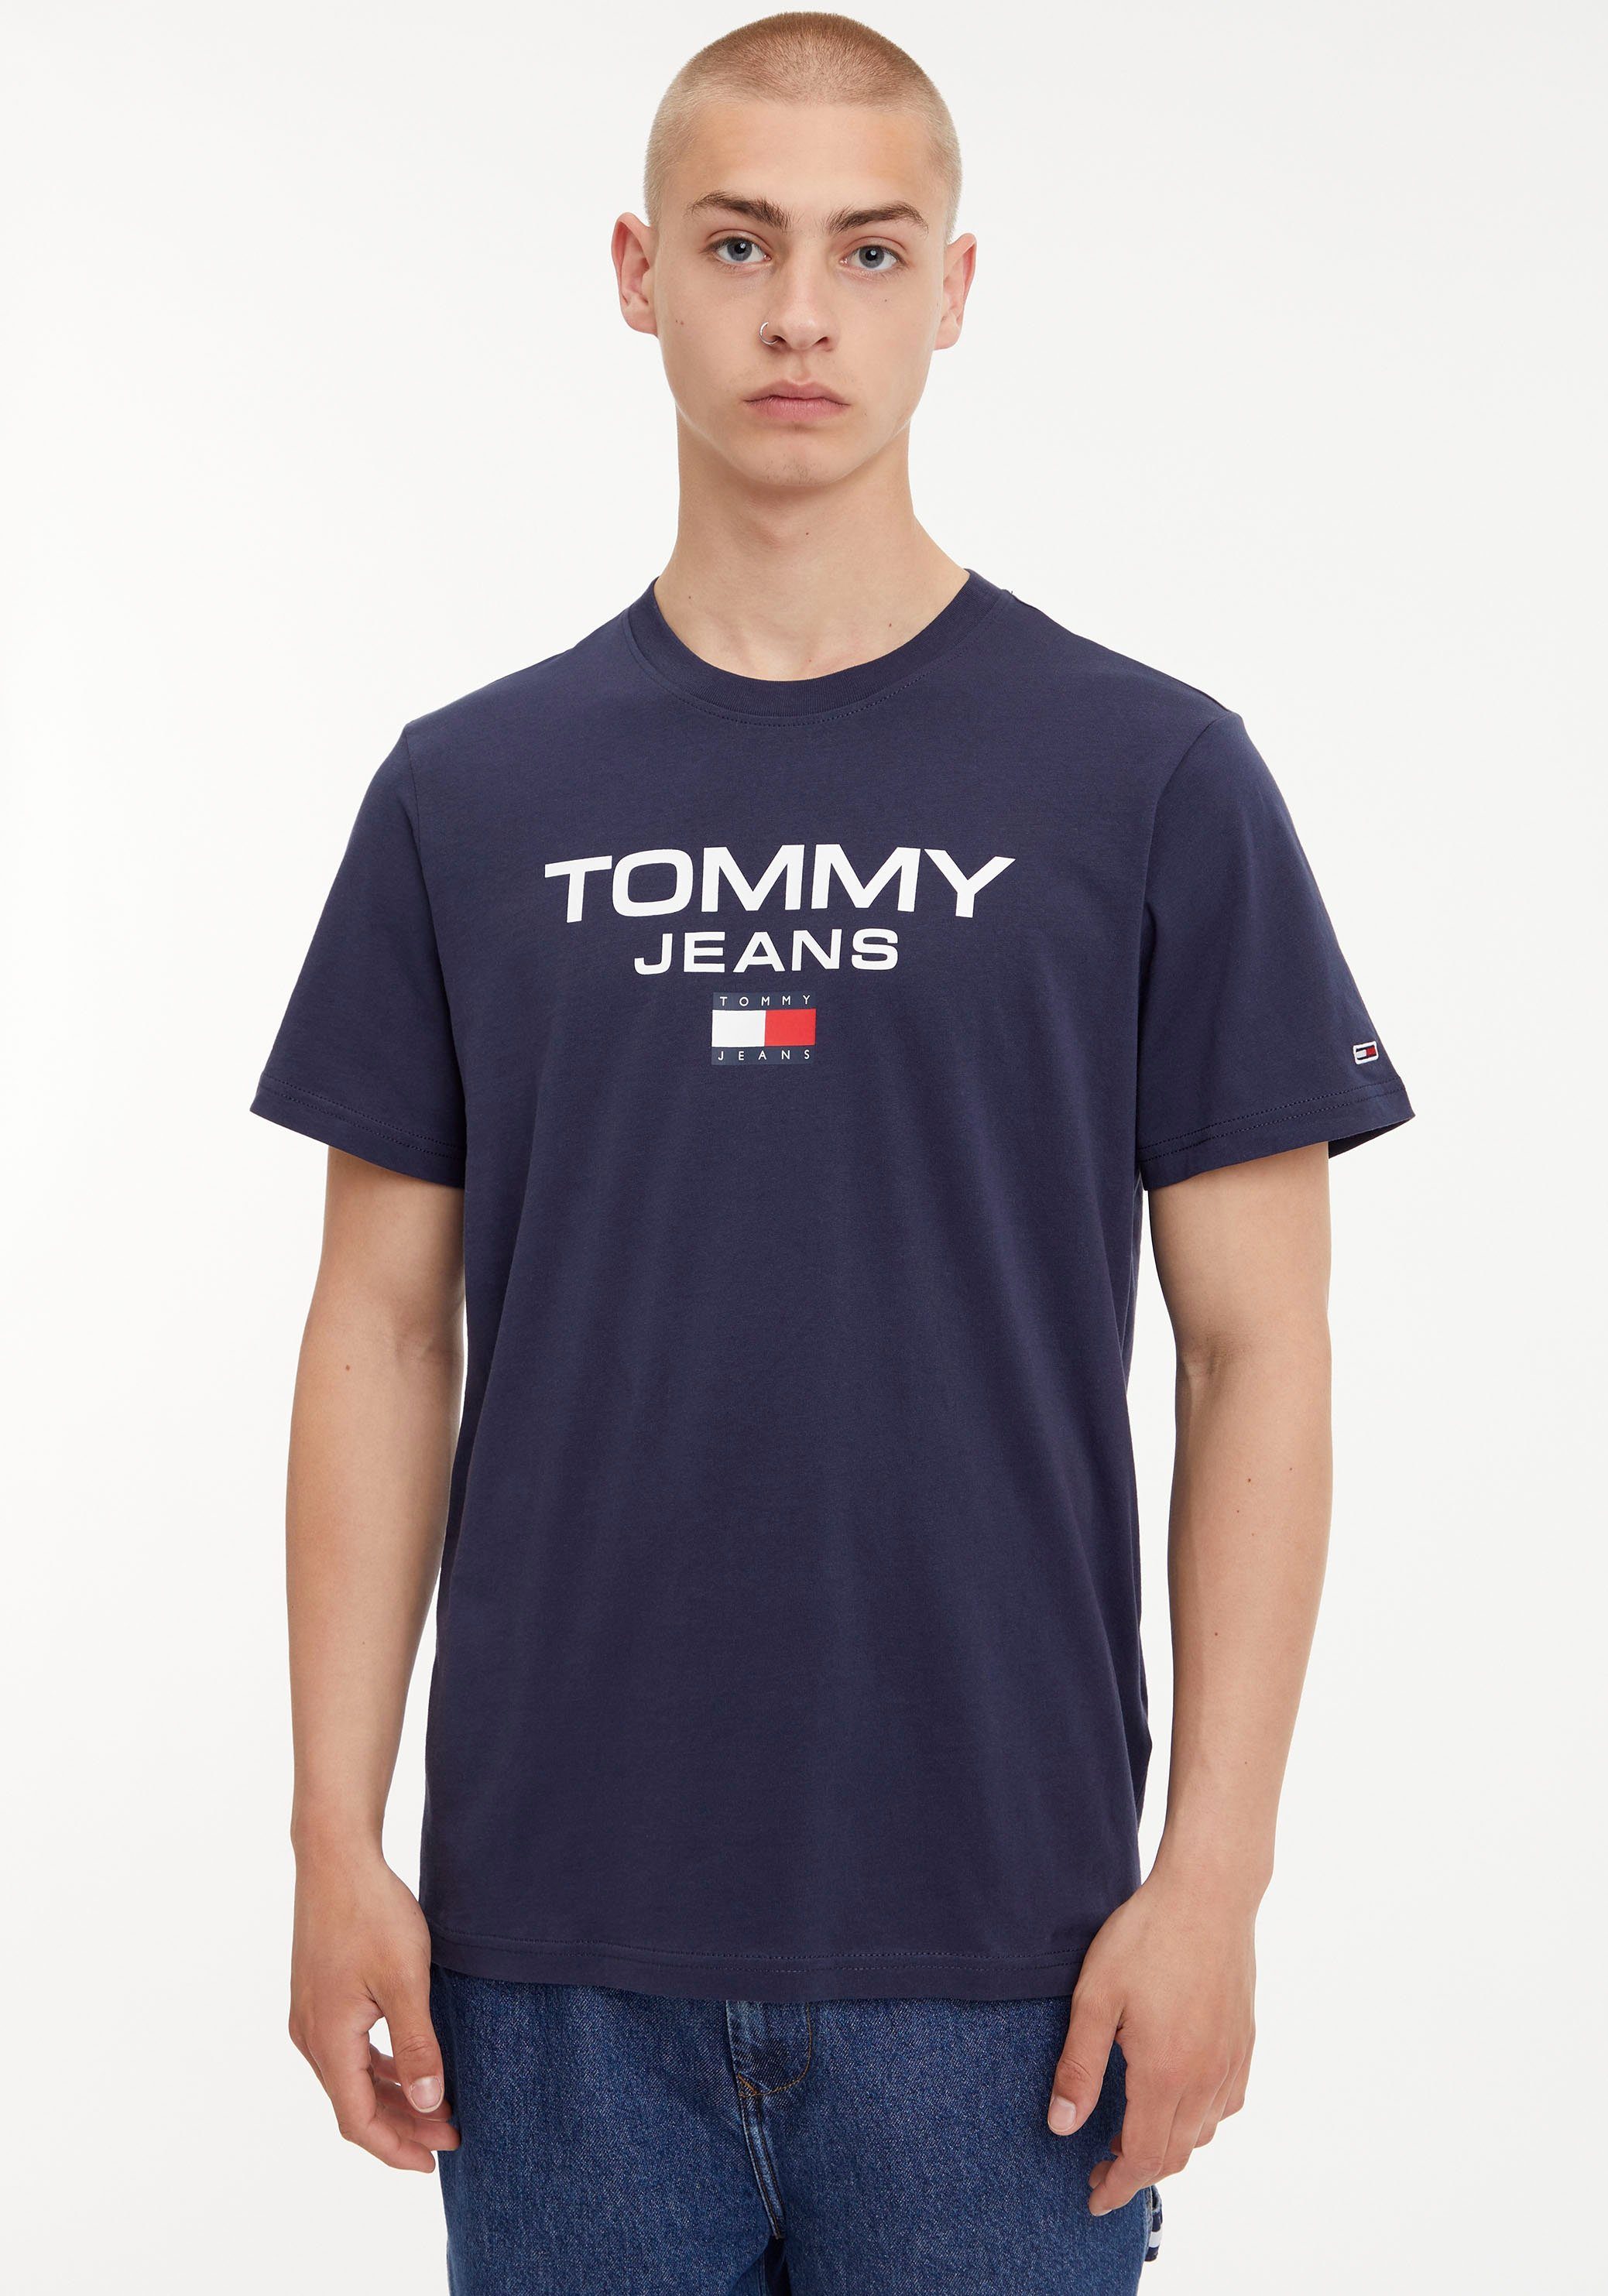 kaufen Herren online Jeans Tommy OTTO Shirts |